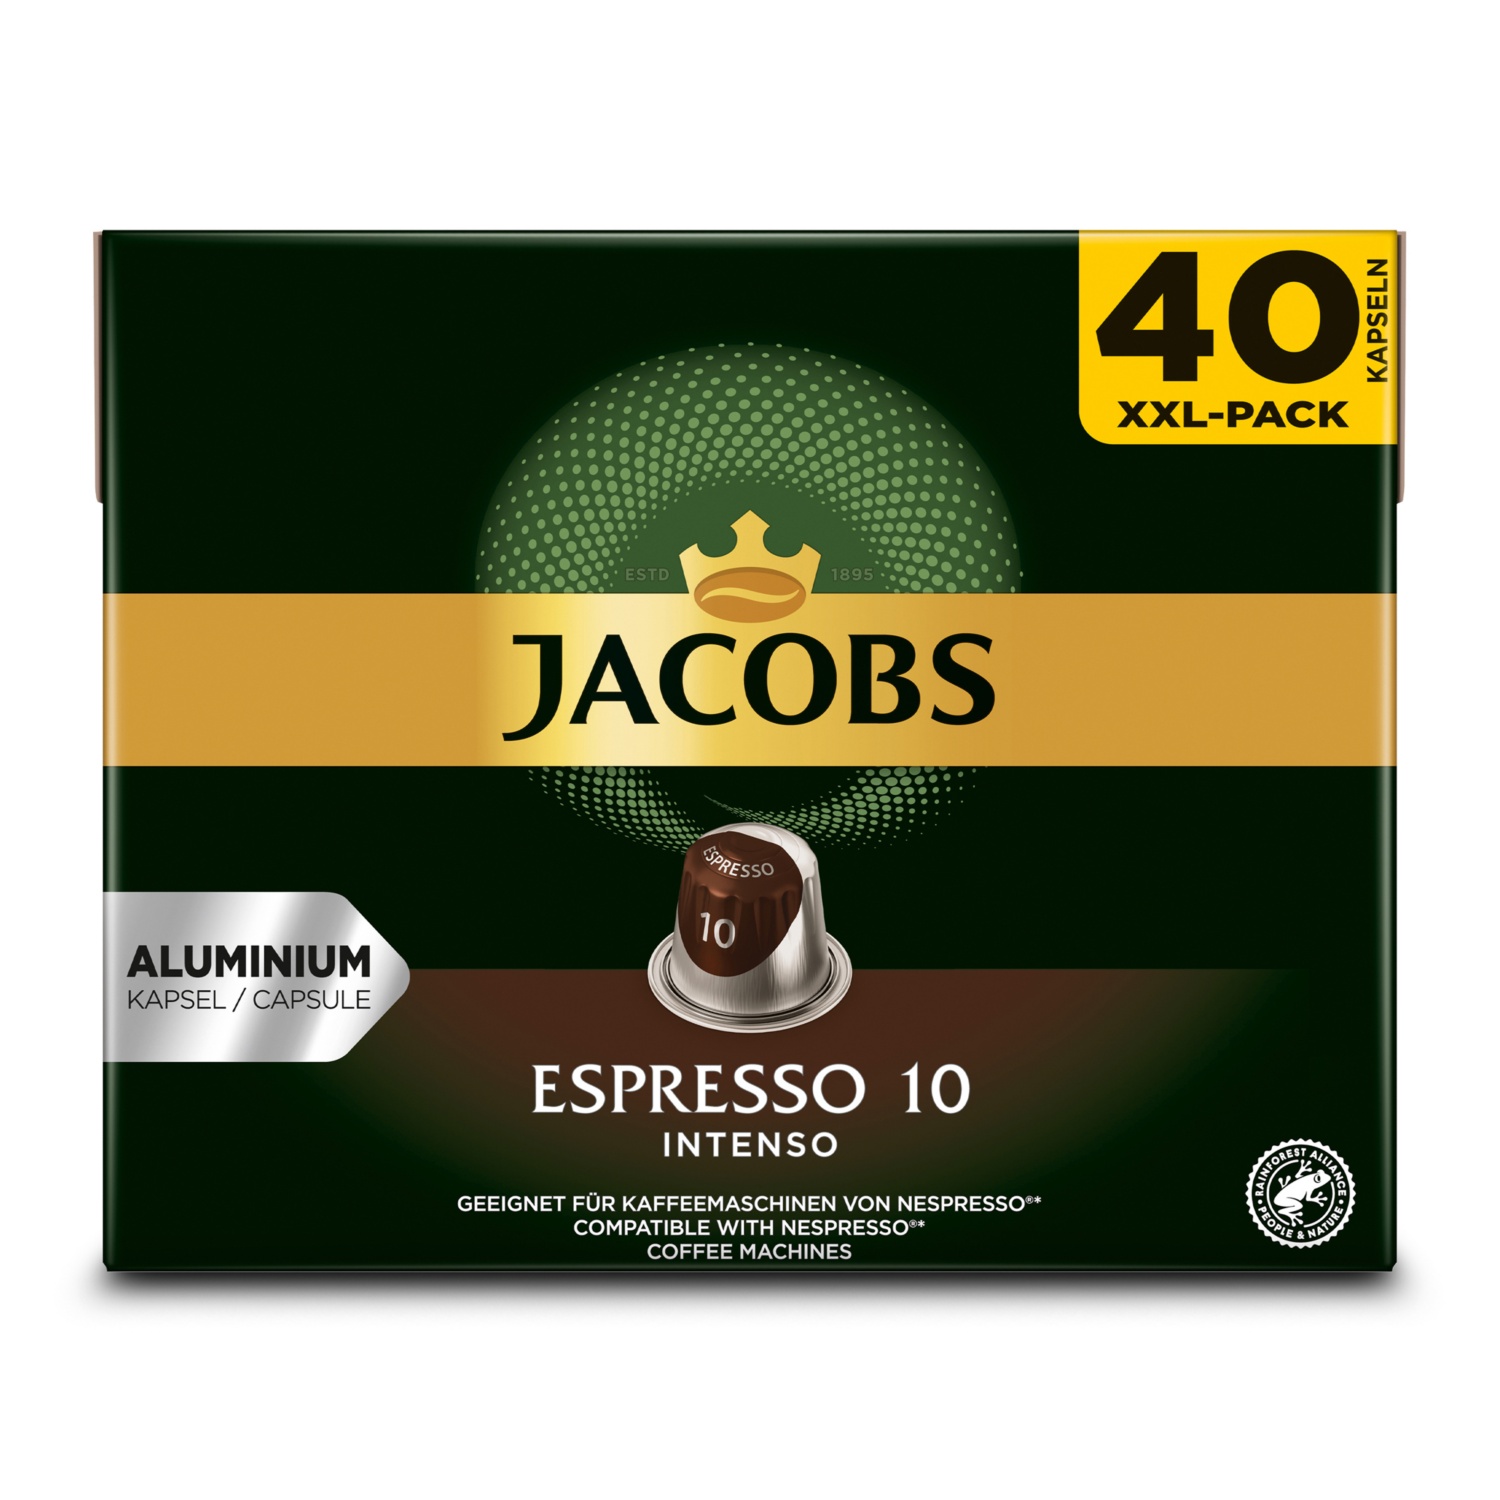 JACOBS Kaffeekapseln, Espresso Intenso